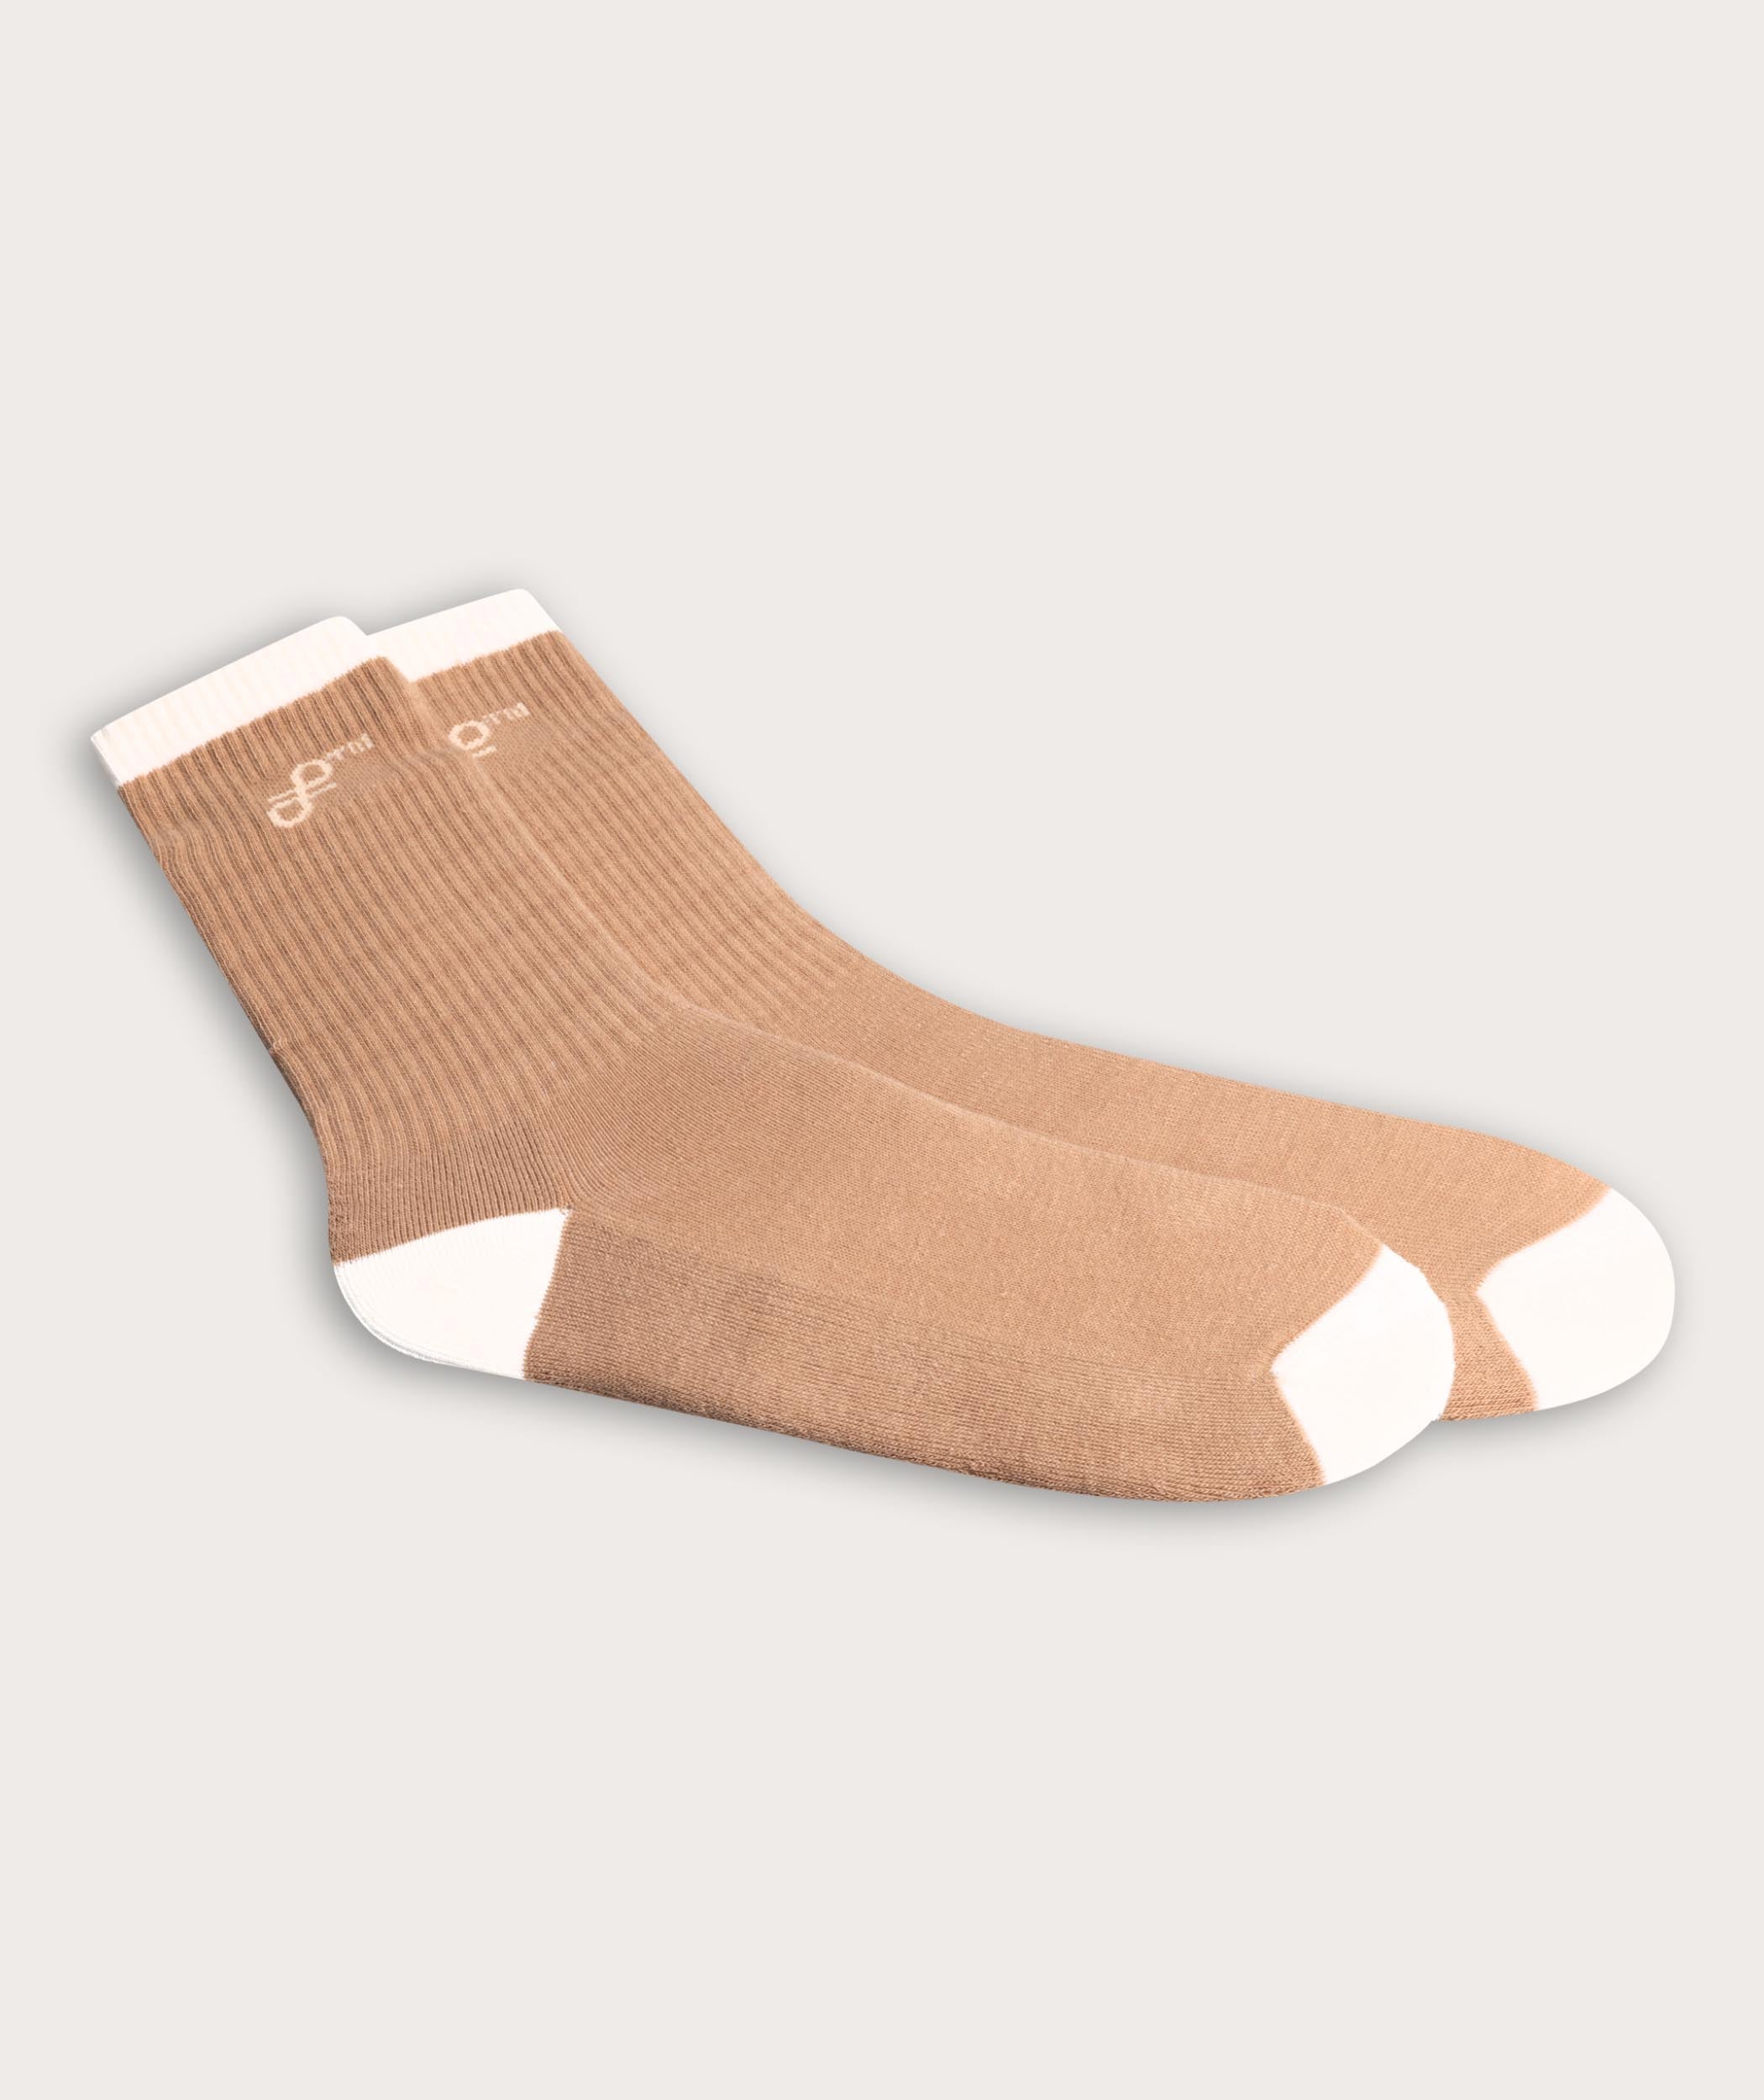 Socks FOM Crew - Beige/ Mustard (Size 4-7)